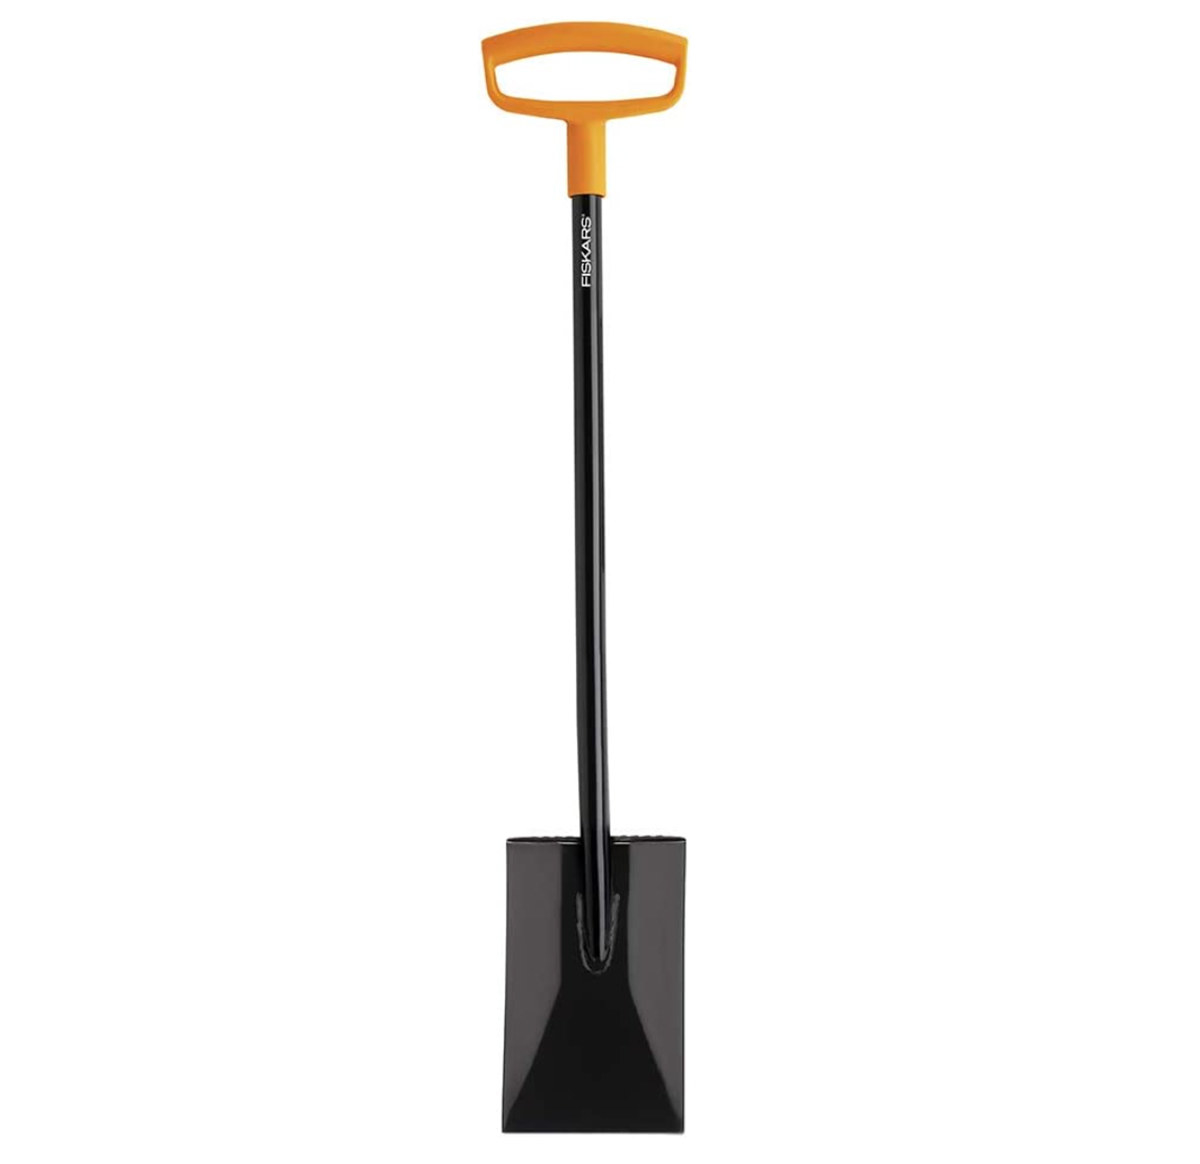 An image of a Fiskars steel d-handle flat square garden spade